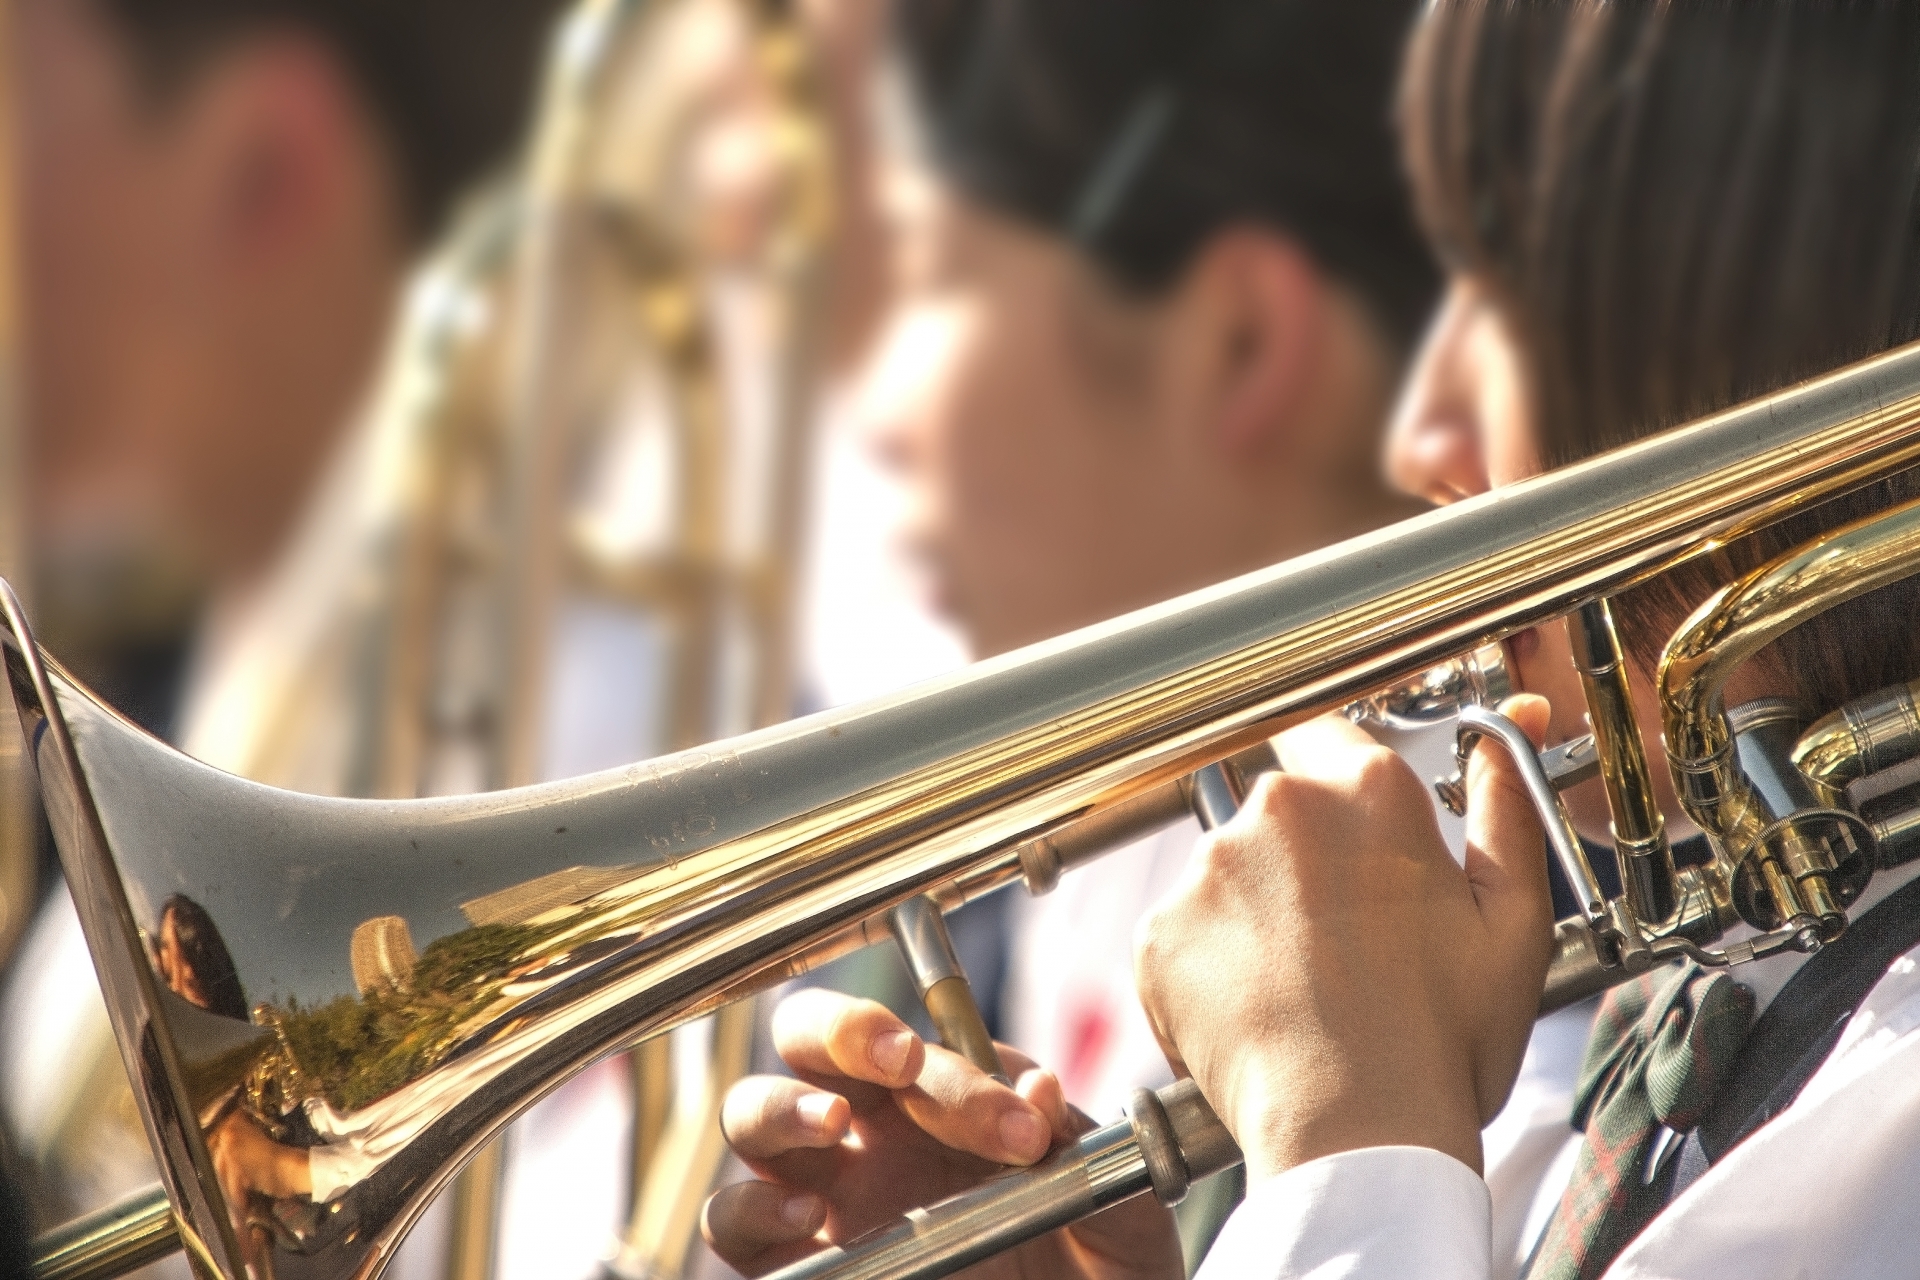 (日本語) 中高生に勧める、一般の吹奏楽団に所属する3つのメリット